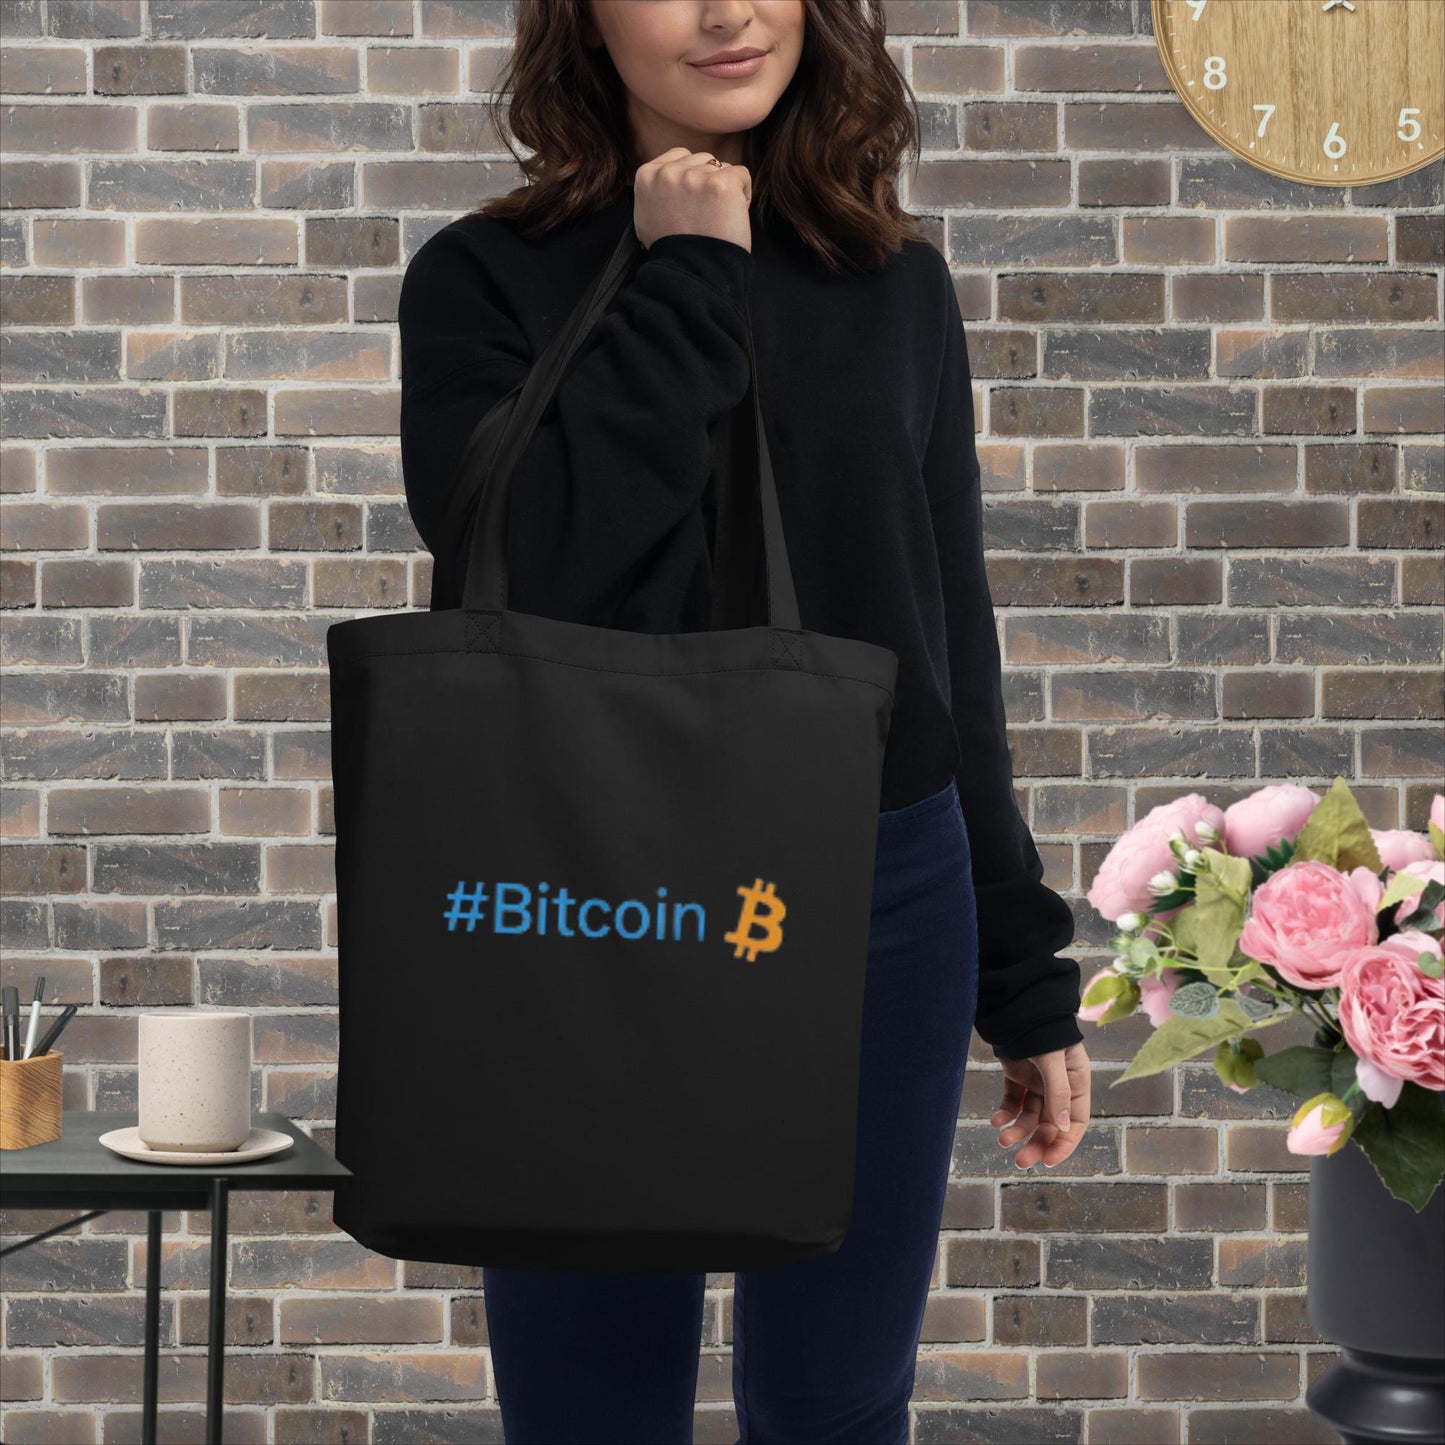 BTC Lungs - Eco Bio Bag